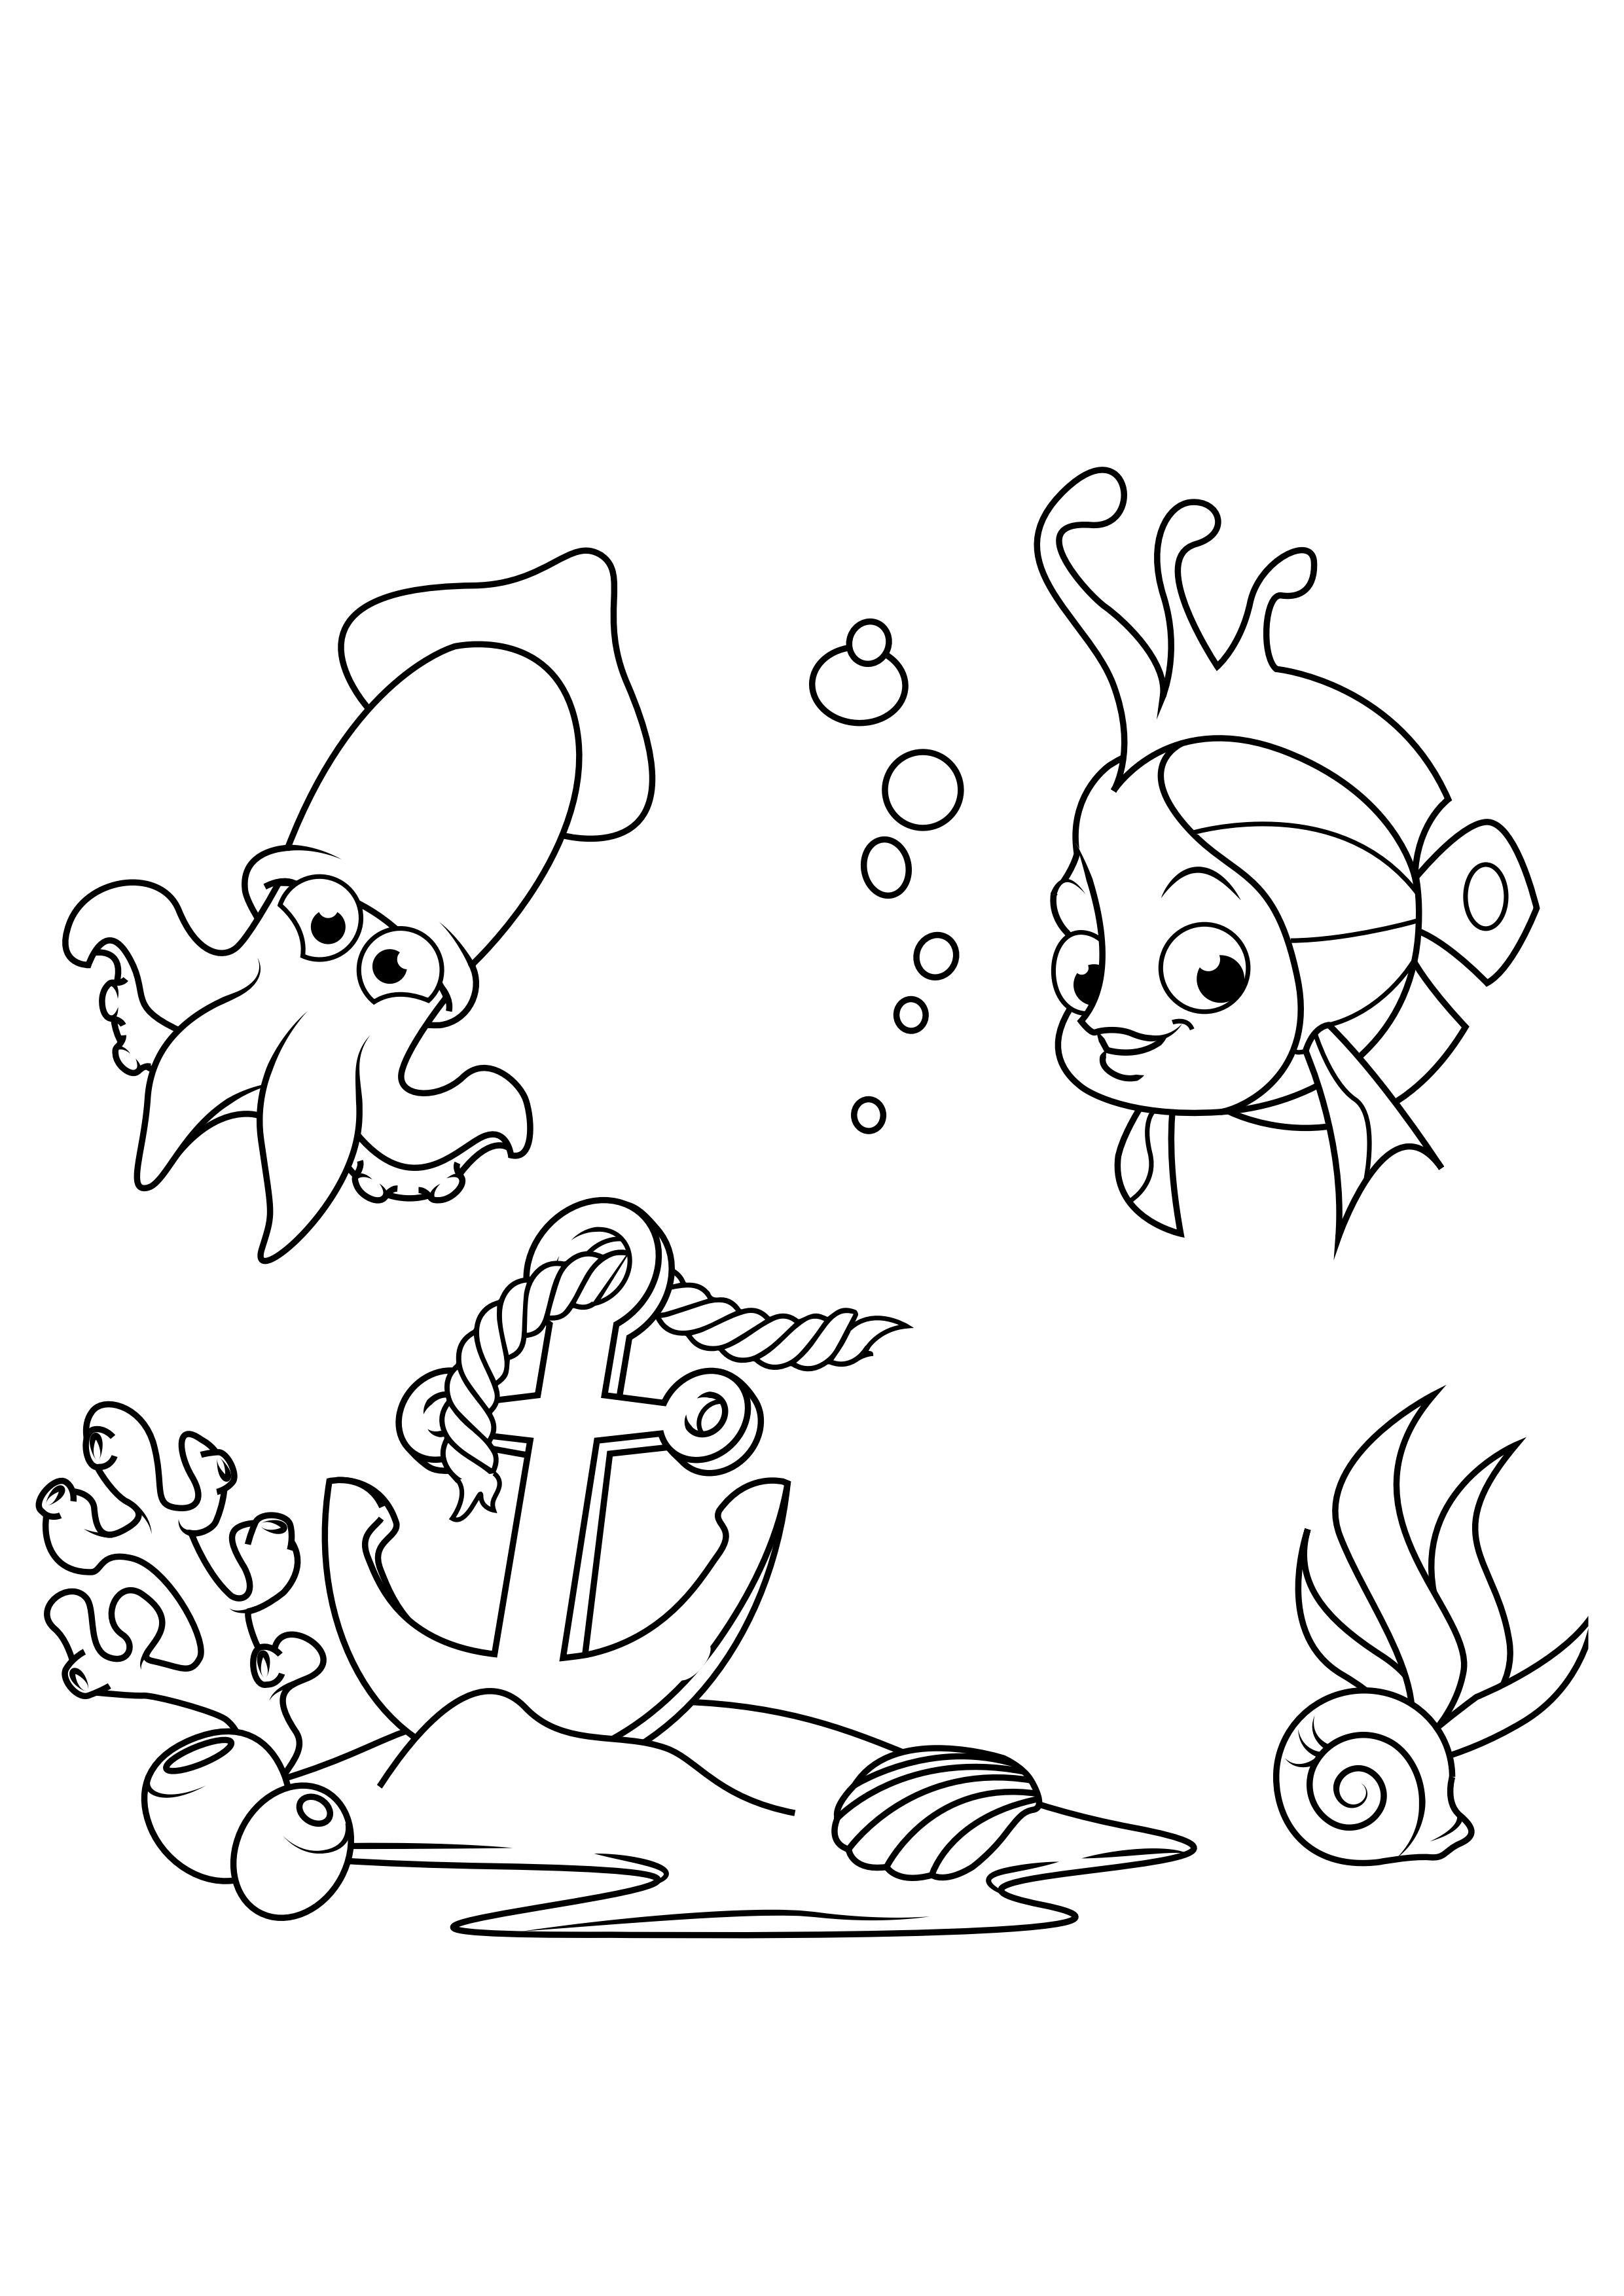 Dibujo para colorear pescado y calamar